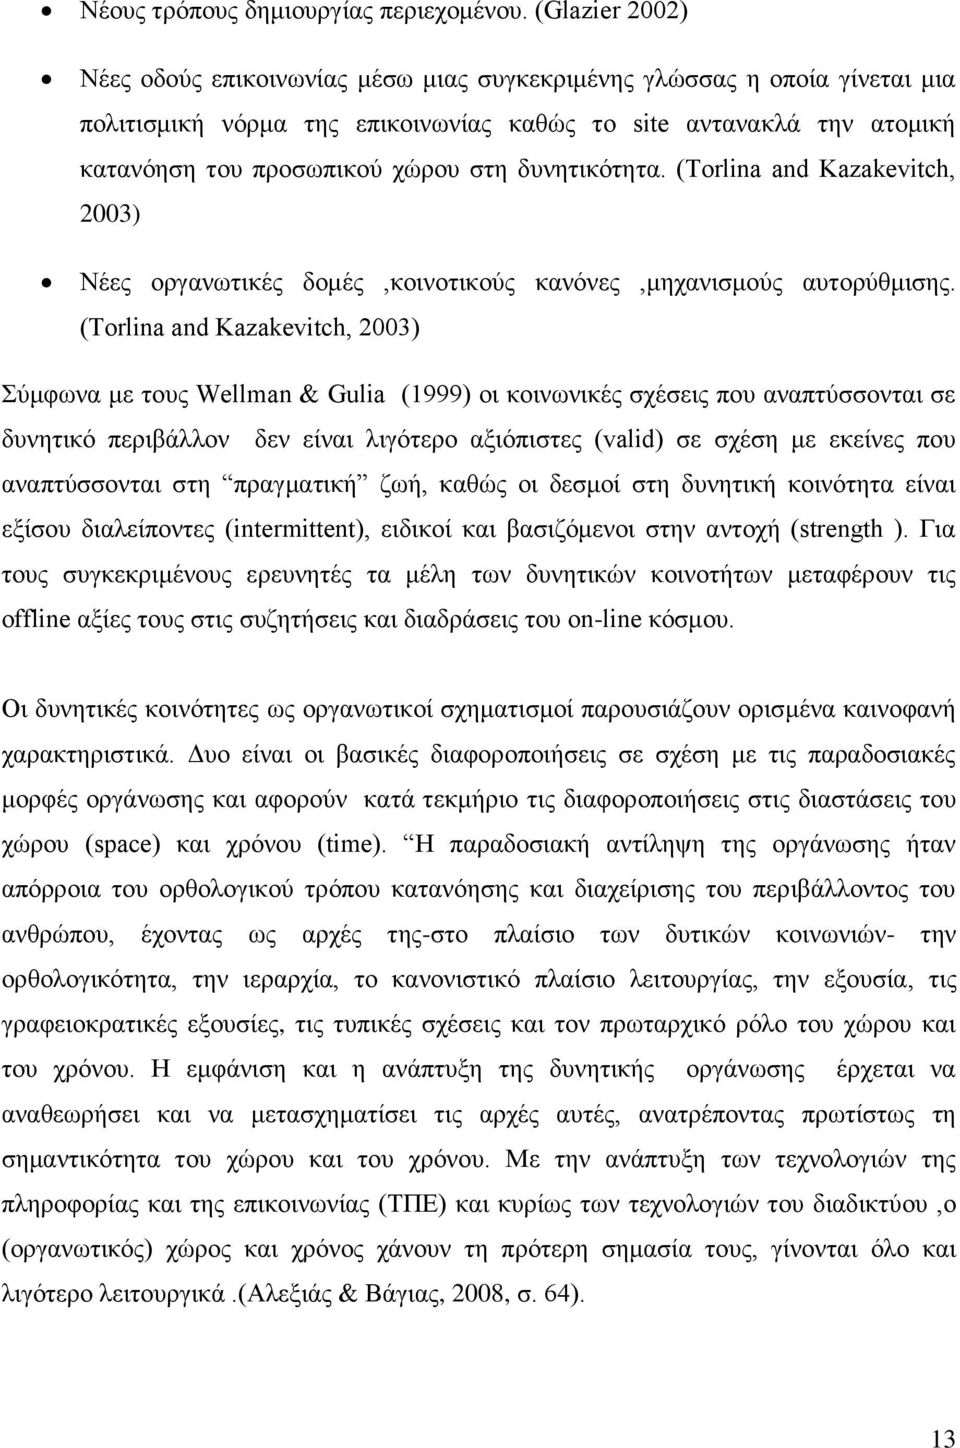 δυνητικότητα. (Τorlina and Kazakevitch, 2003) Νέες οργανωτικές δομές,κοινοτικούς κανόνες,μηχανισμούς αυτορύθμισης.